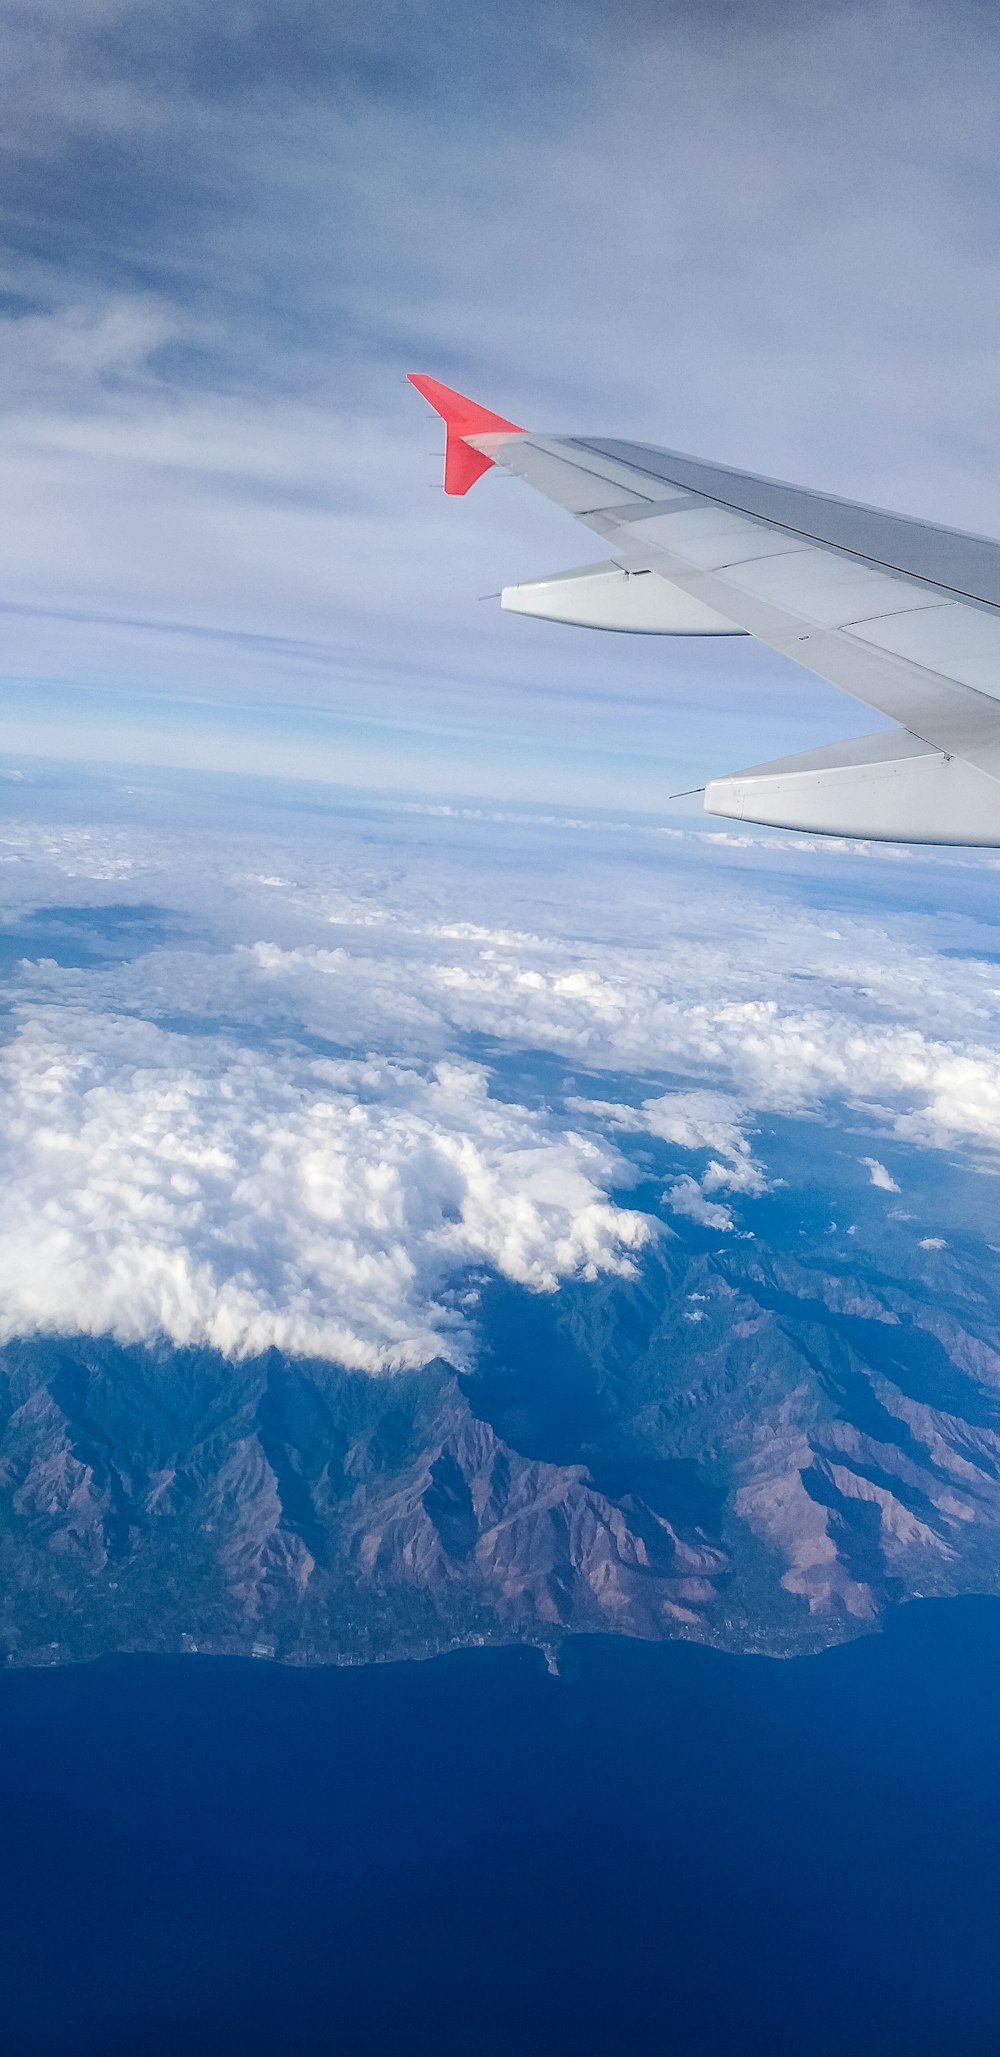 Flugzeug über Berge und Wolken